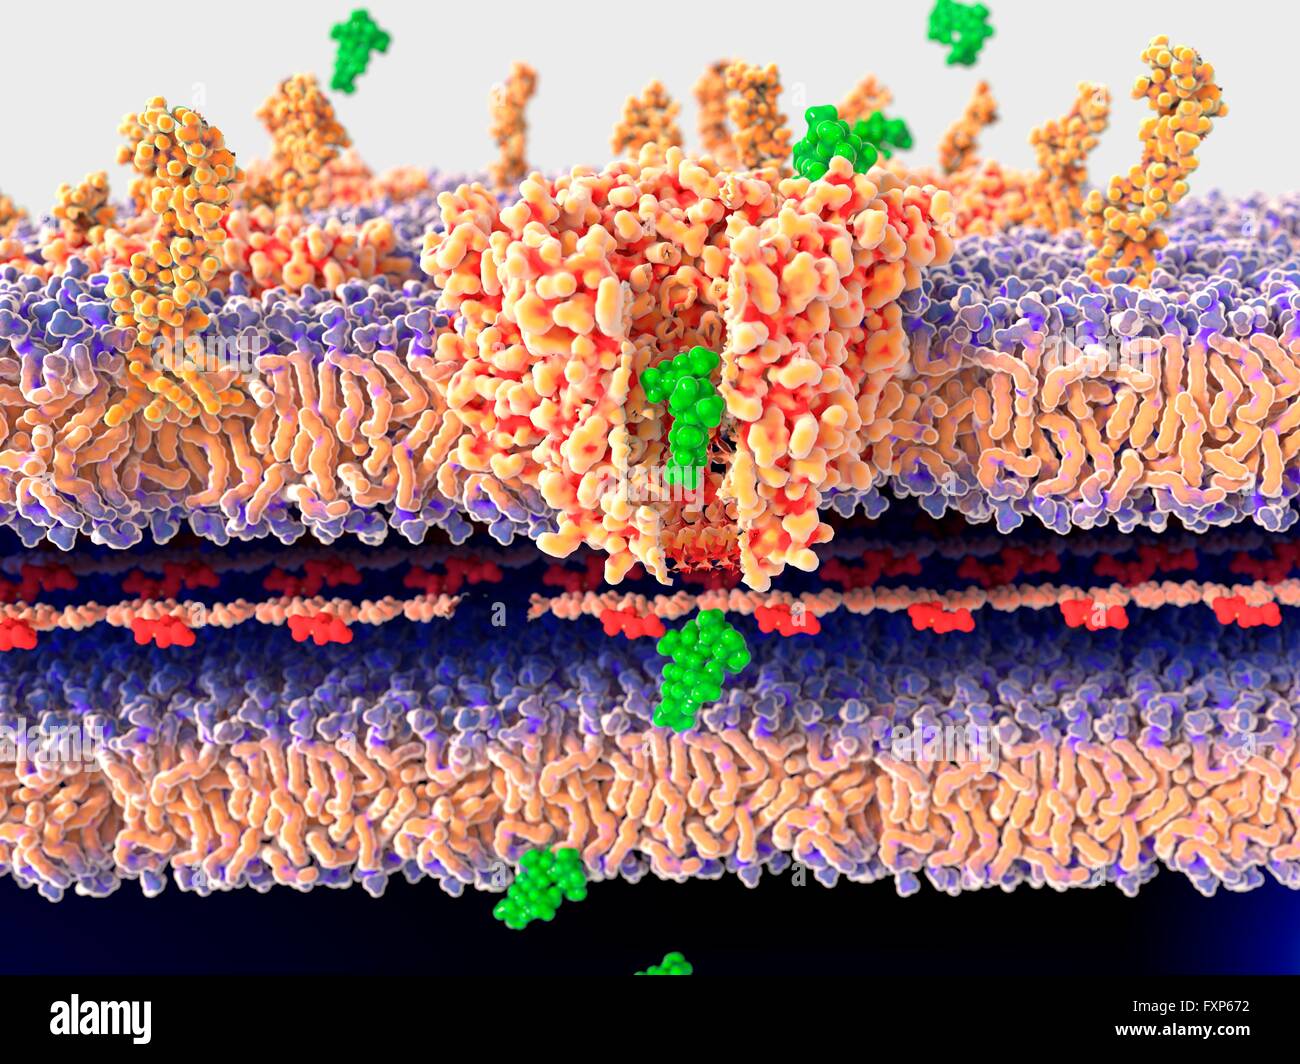 Antibiotico passando attraverso la parete batterica. Illustrazione del meccanismo molecolare di azione antibiotica. Un antibiotico (streptomicina, verde) è passante attraverso la parete batterica attraverso la proteina del canale porina. Questo porterà alla morte del batterio. Per le immagini che mostrano il meccanismo molecolare della resistenza agli antibiotici, vedi F013/1540 e F013/1538. Foto Stock